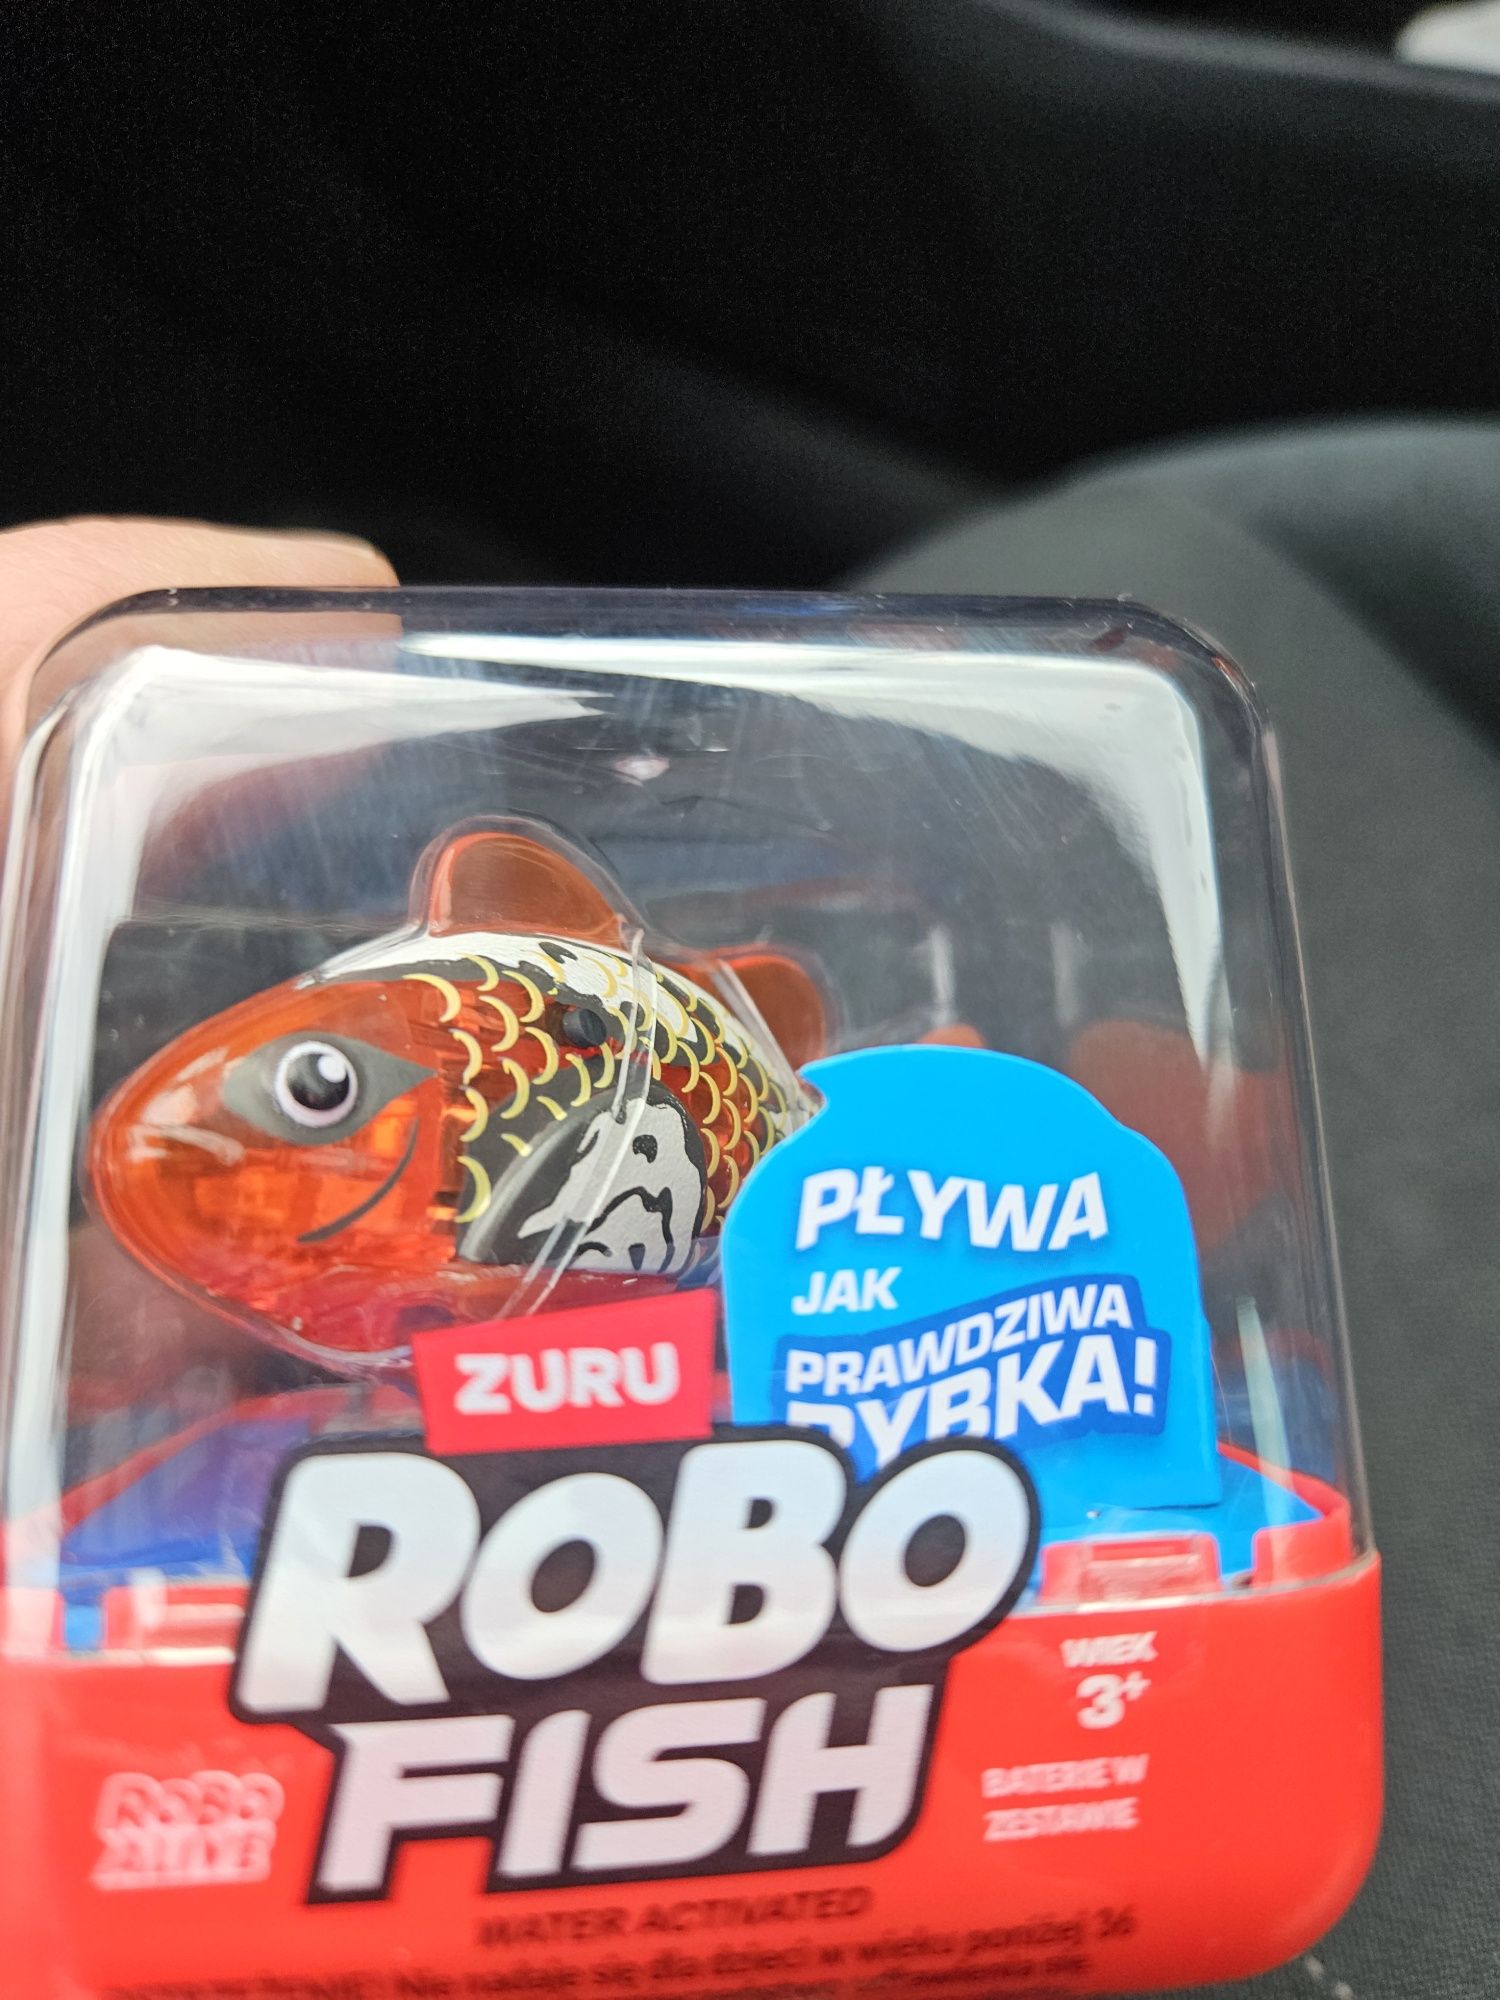 Rybka robo fish zuru